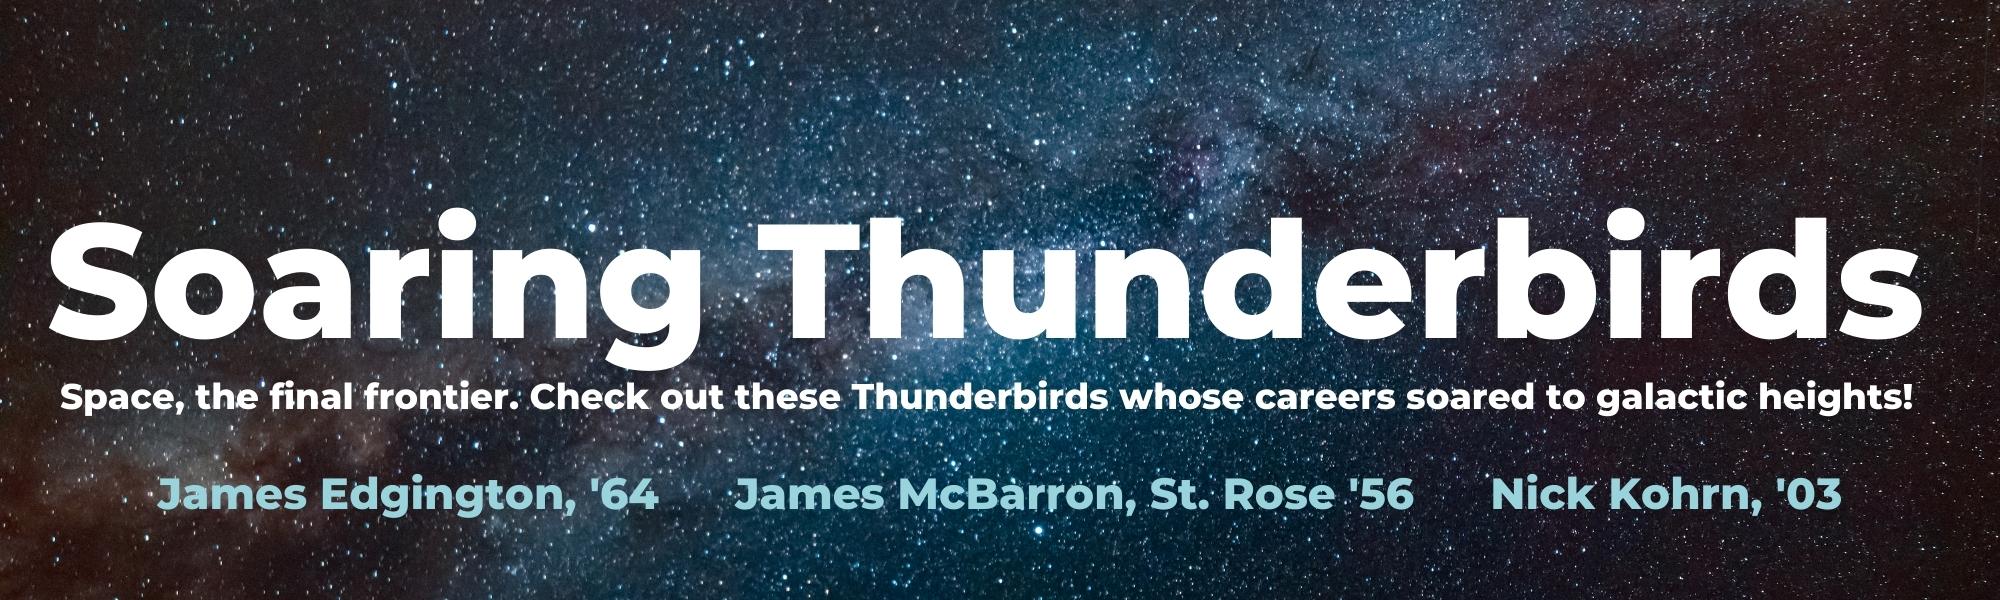 soaring thunderbirds